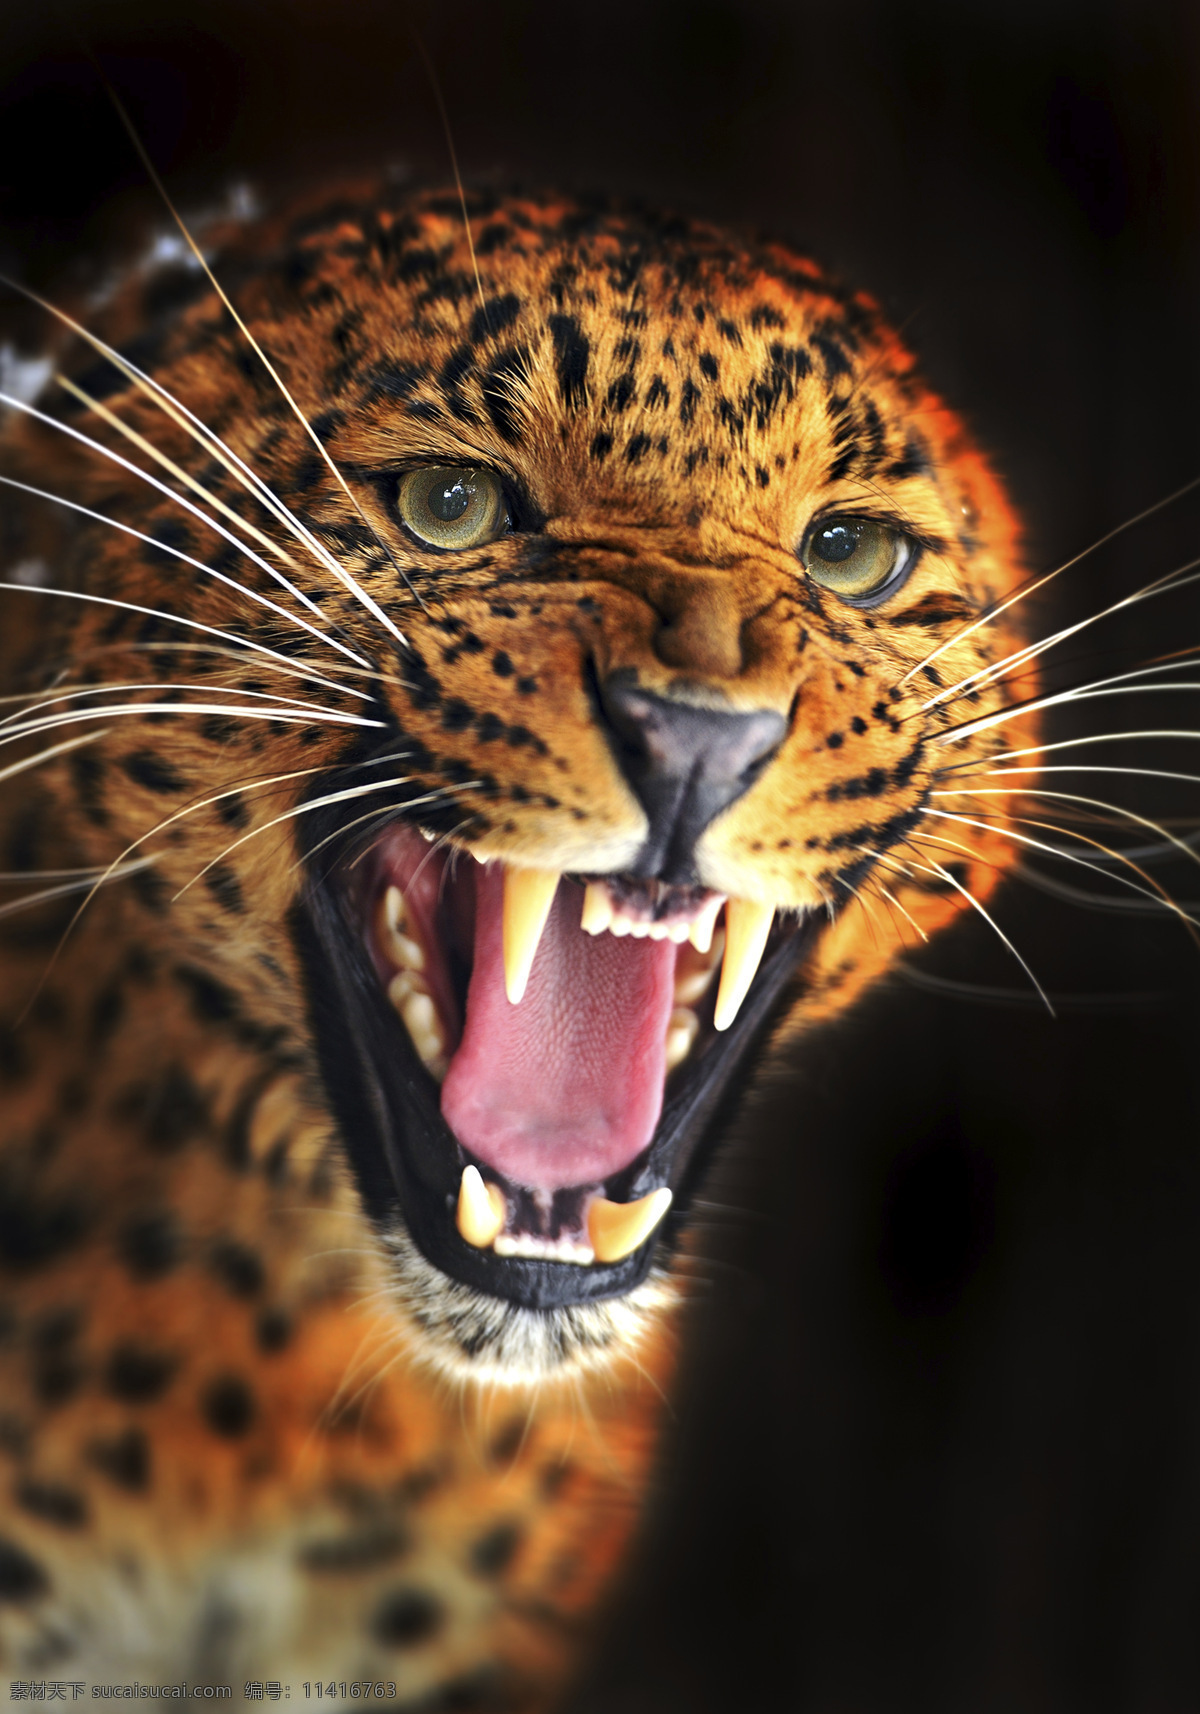 豹子 豹 猎豹 野生豹子 野生 可爱 卖萌 猛兽 野兽 野生动物 哺乳动物 动物 狮 虎 狮虎兽 生物世界